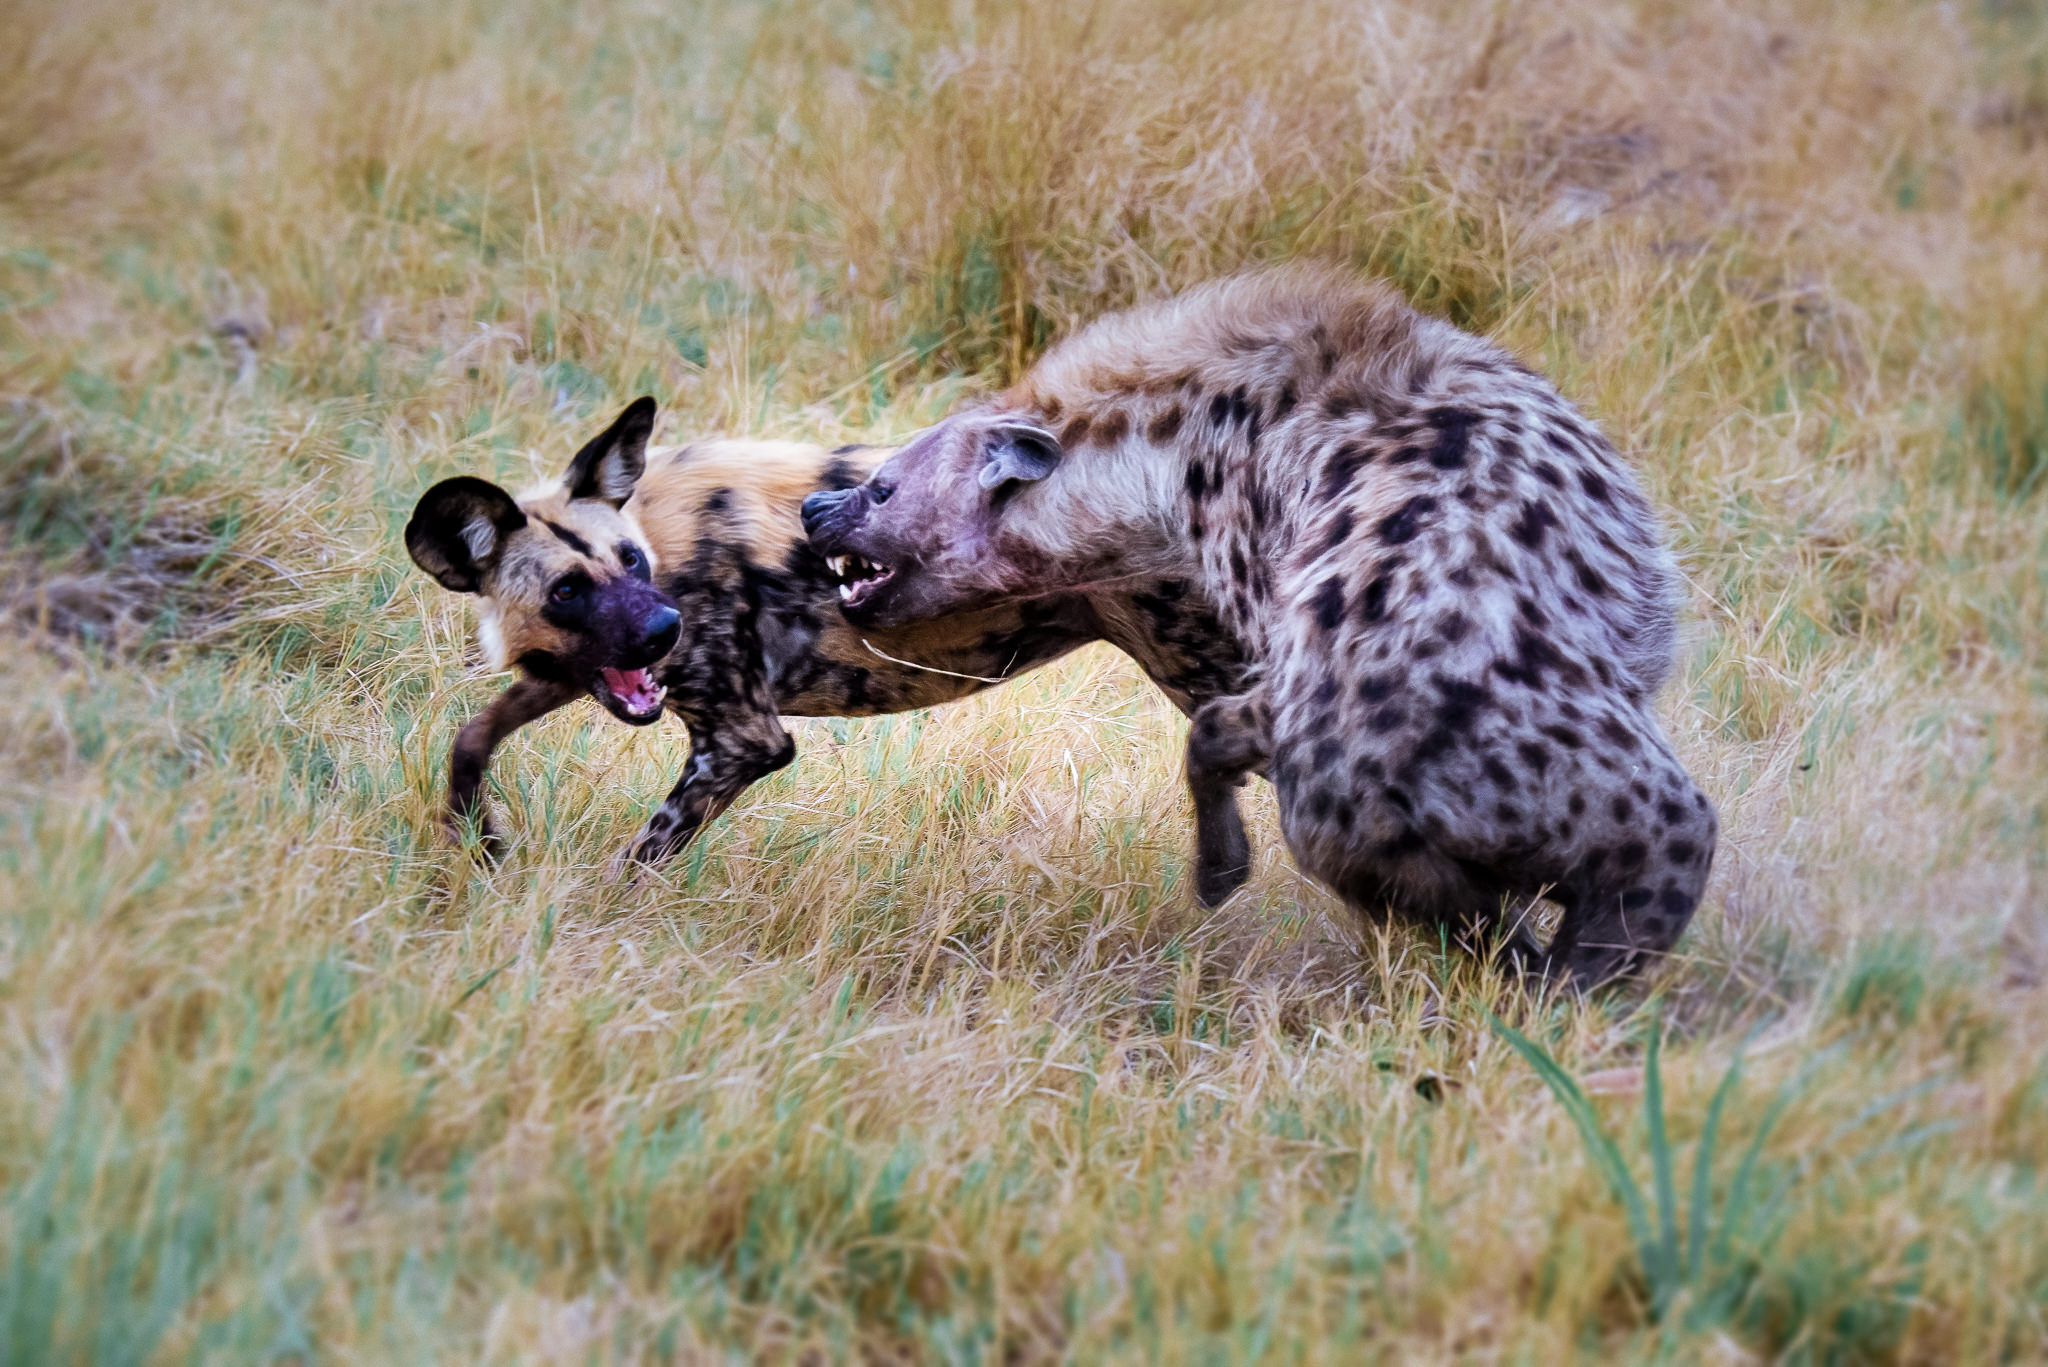 Hyena Attack